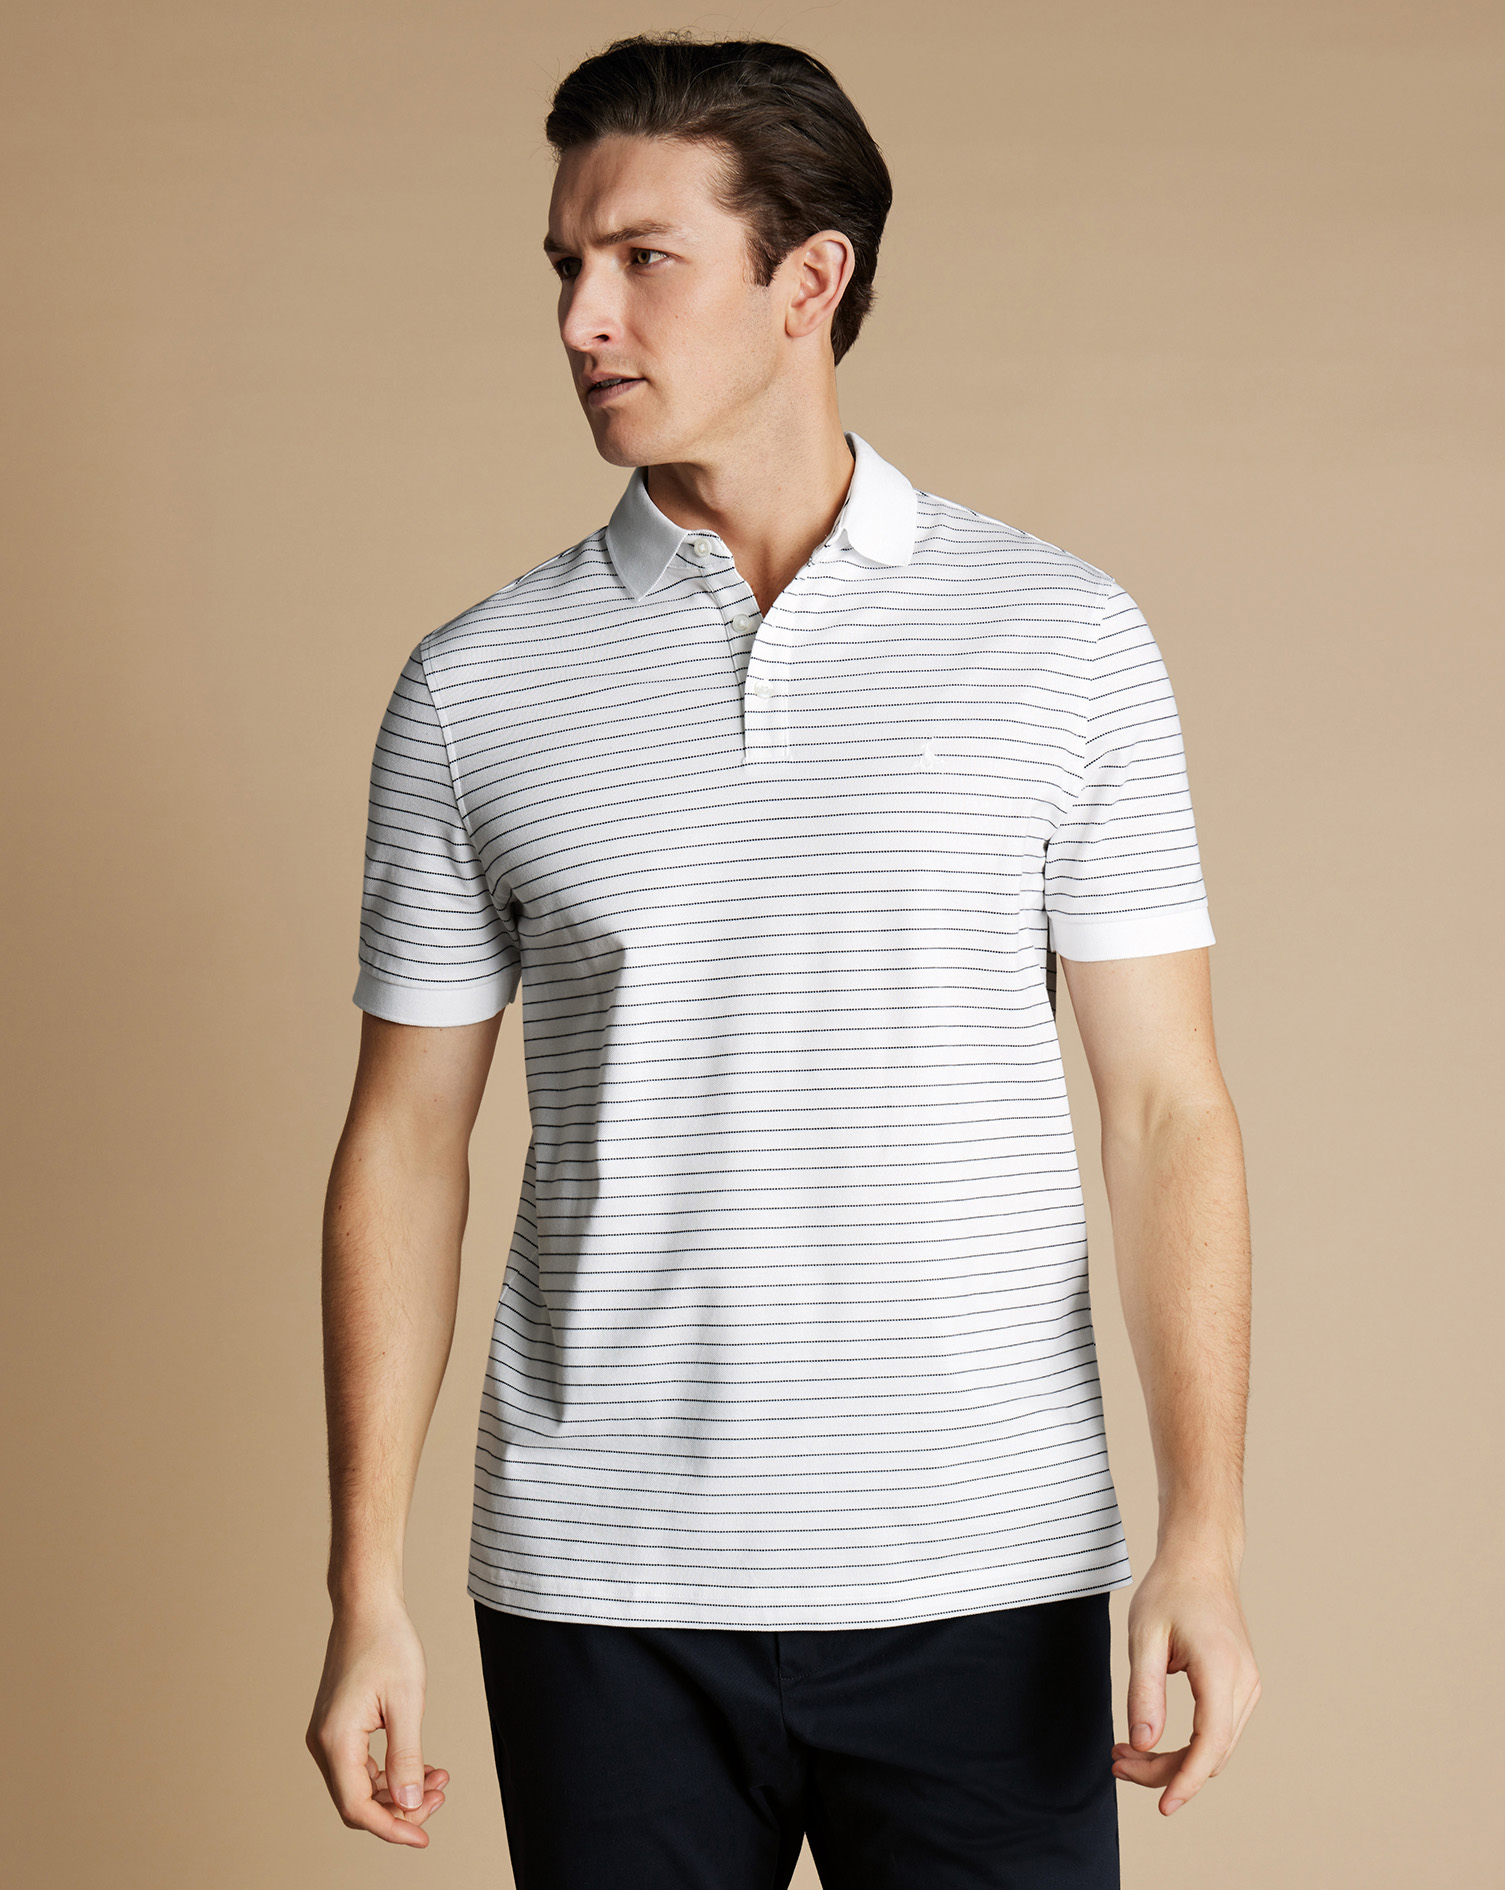 Men's Charles Tyrwhitt Pique Polo Shirt - White & Navy Size XXXL Cotton
